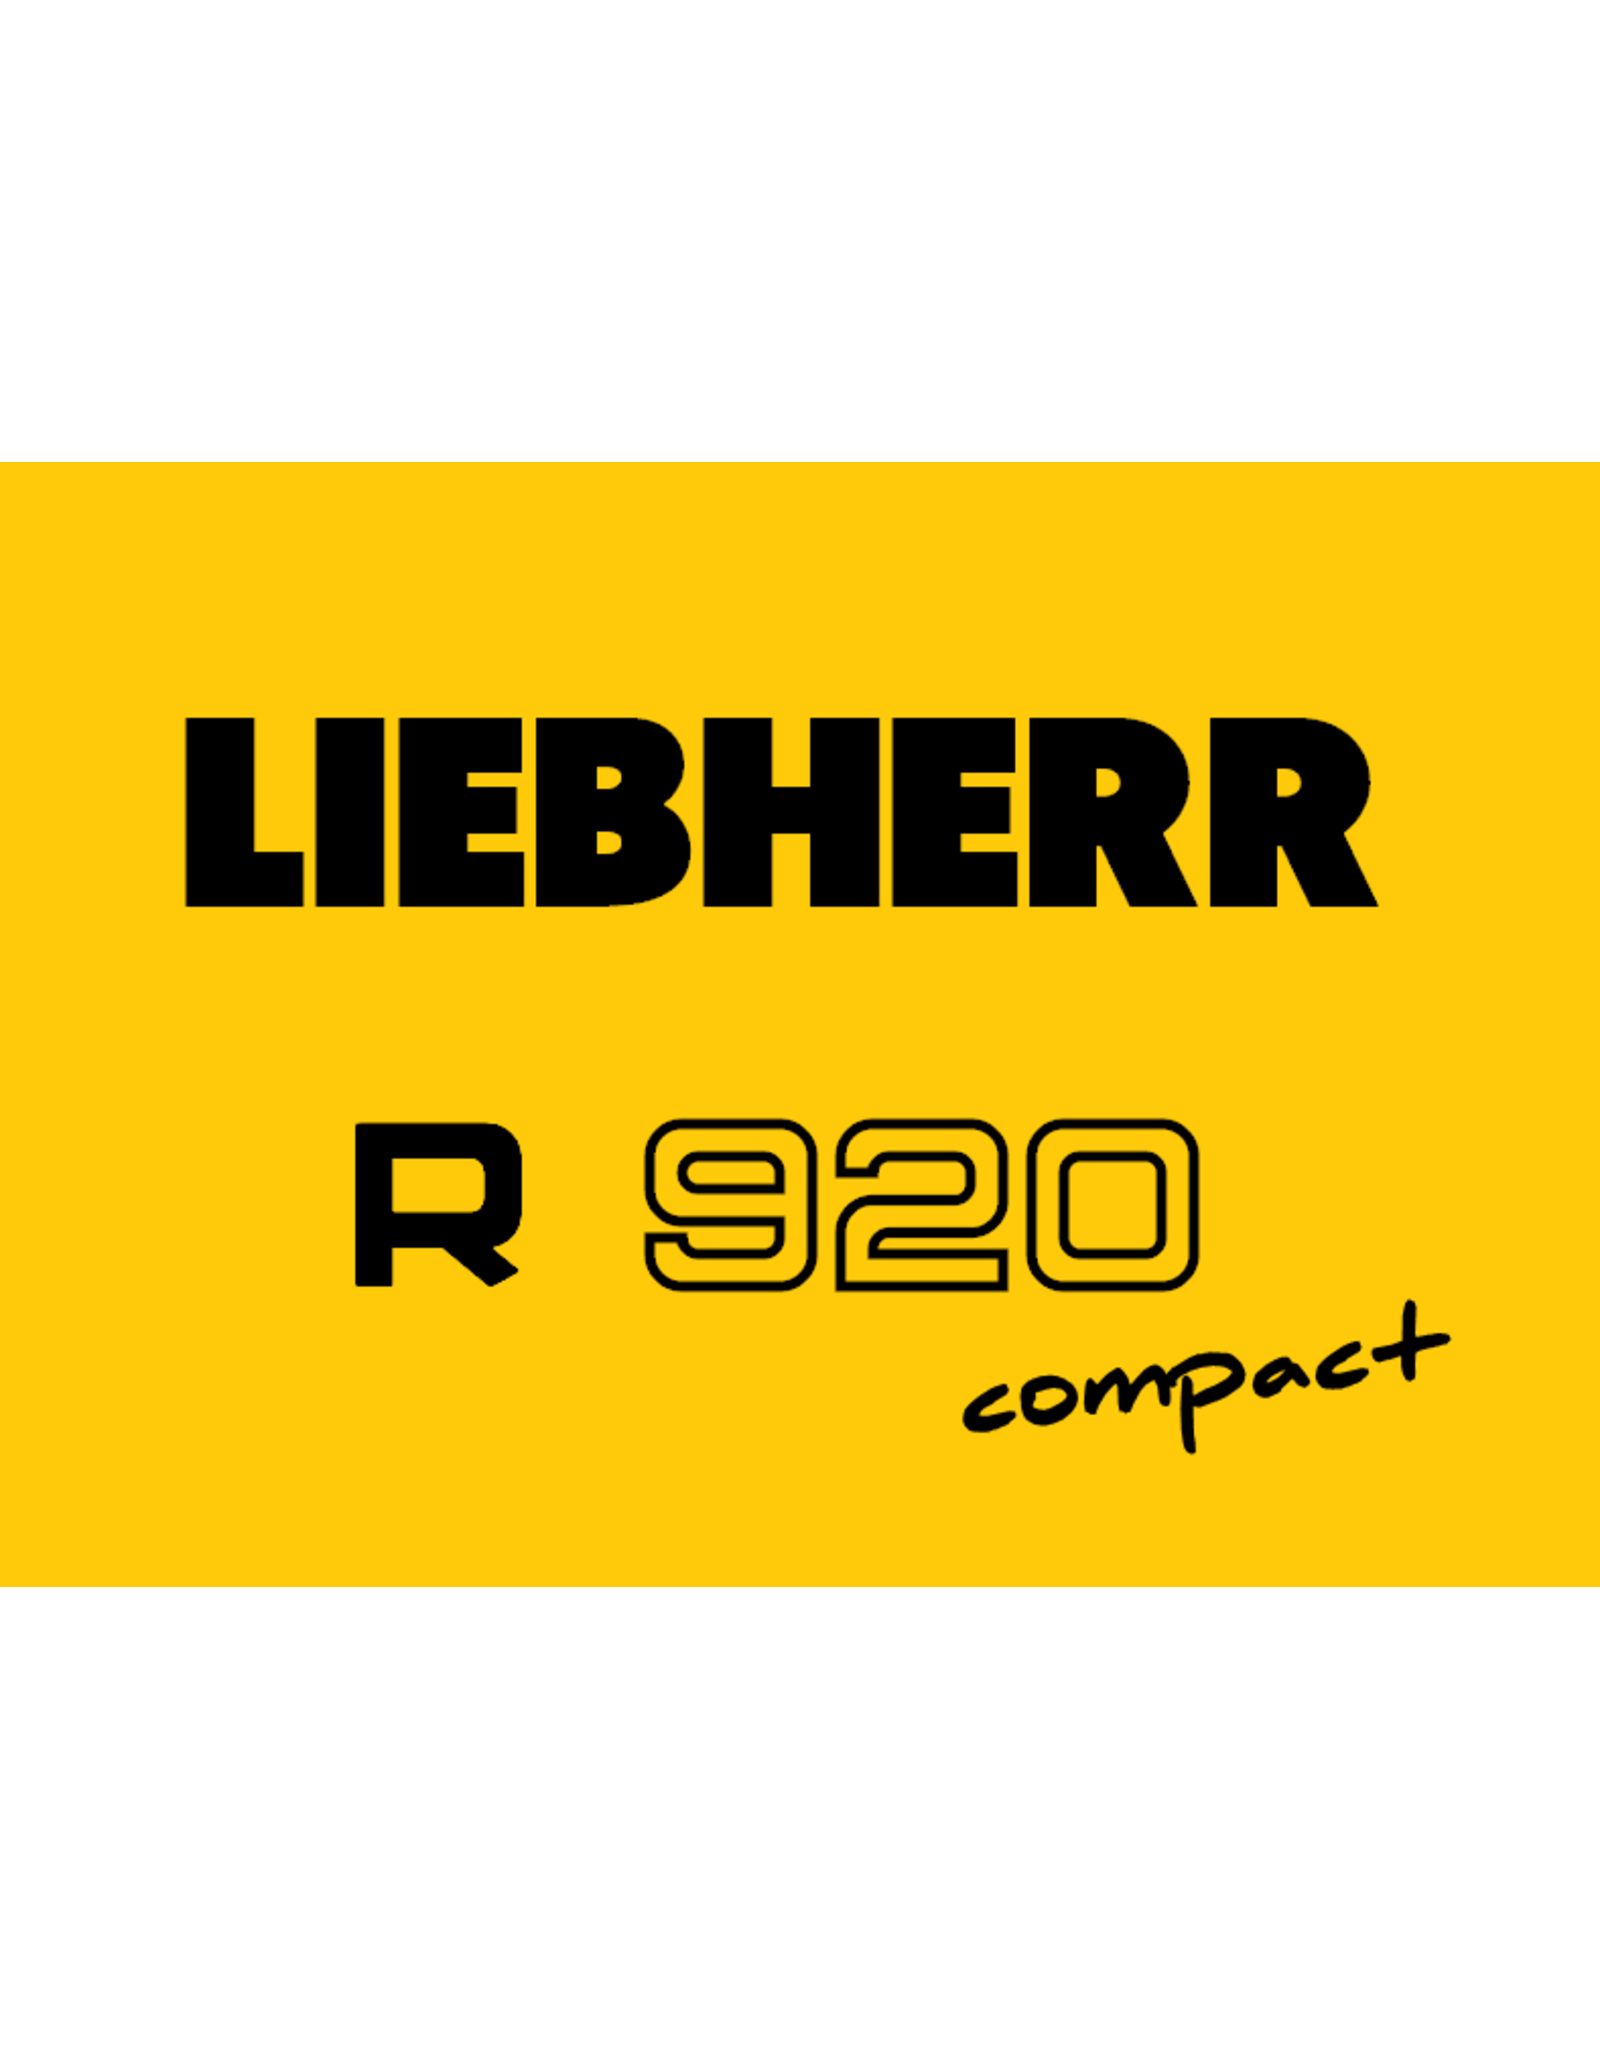 Echle Hartstahl GmbH FOPS pour Liebherr R 920 Compact